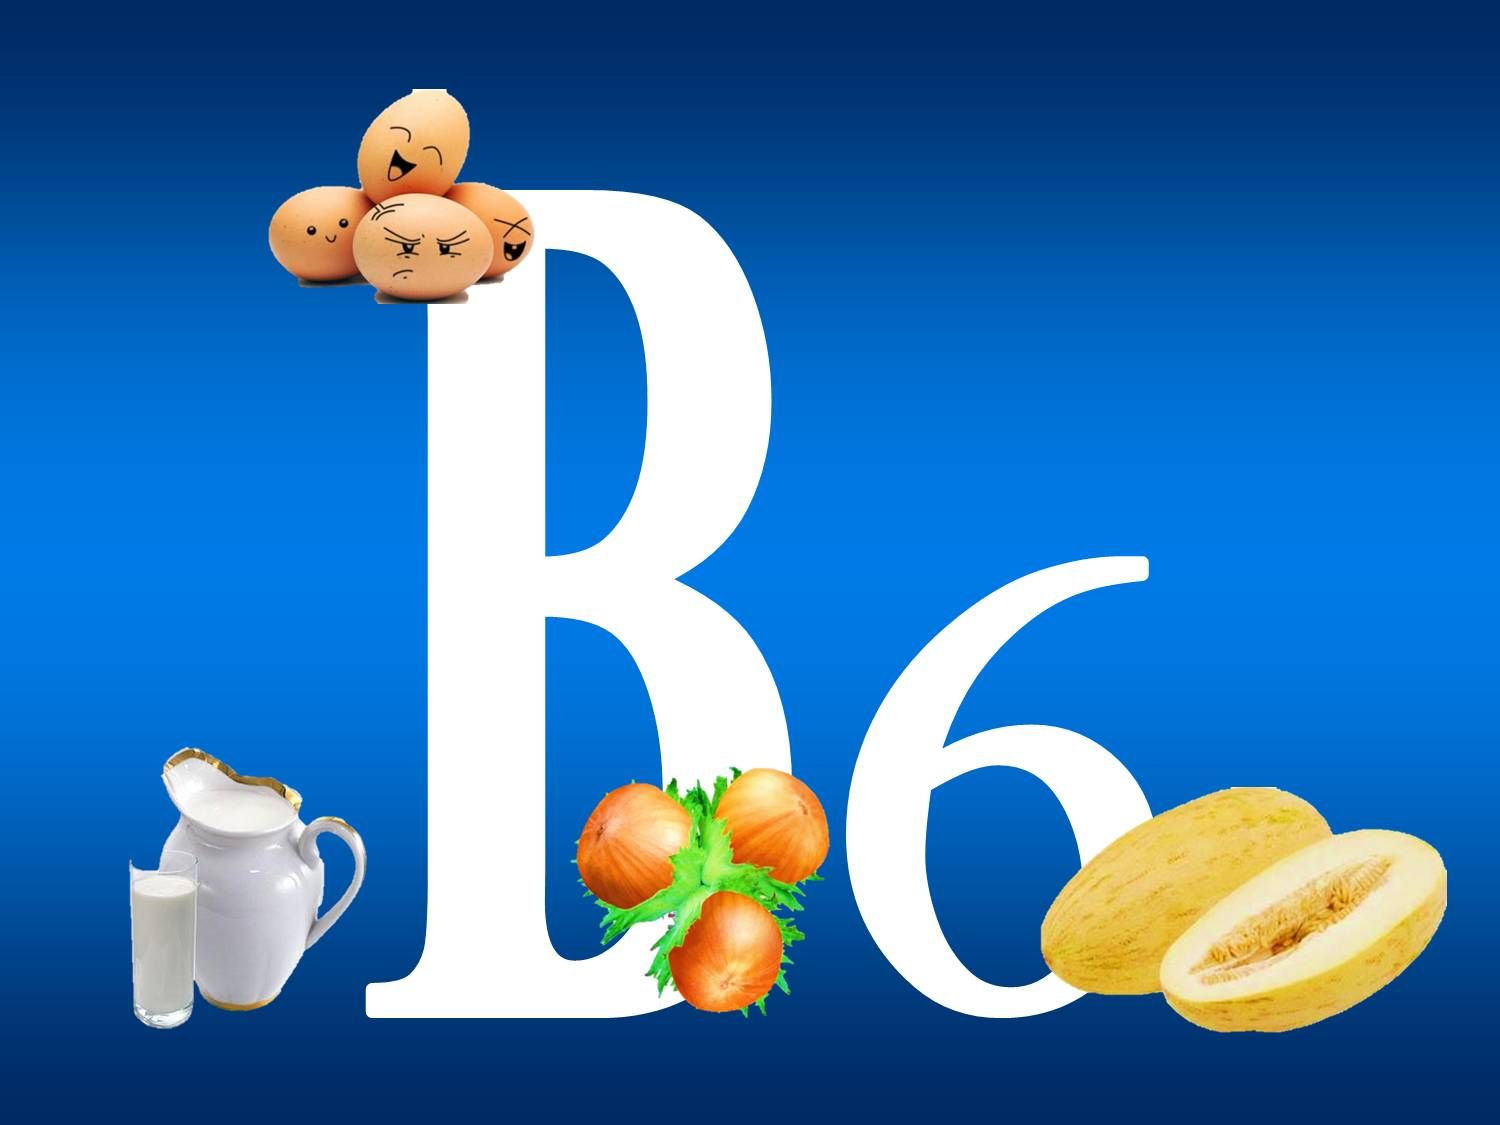 Витамины б 6 б 9